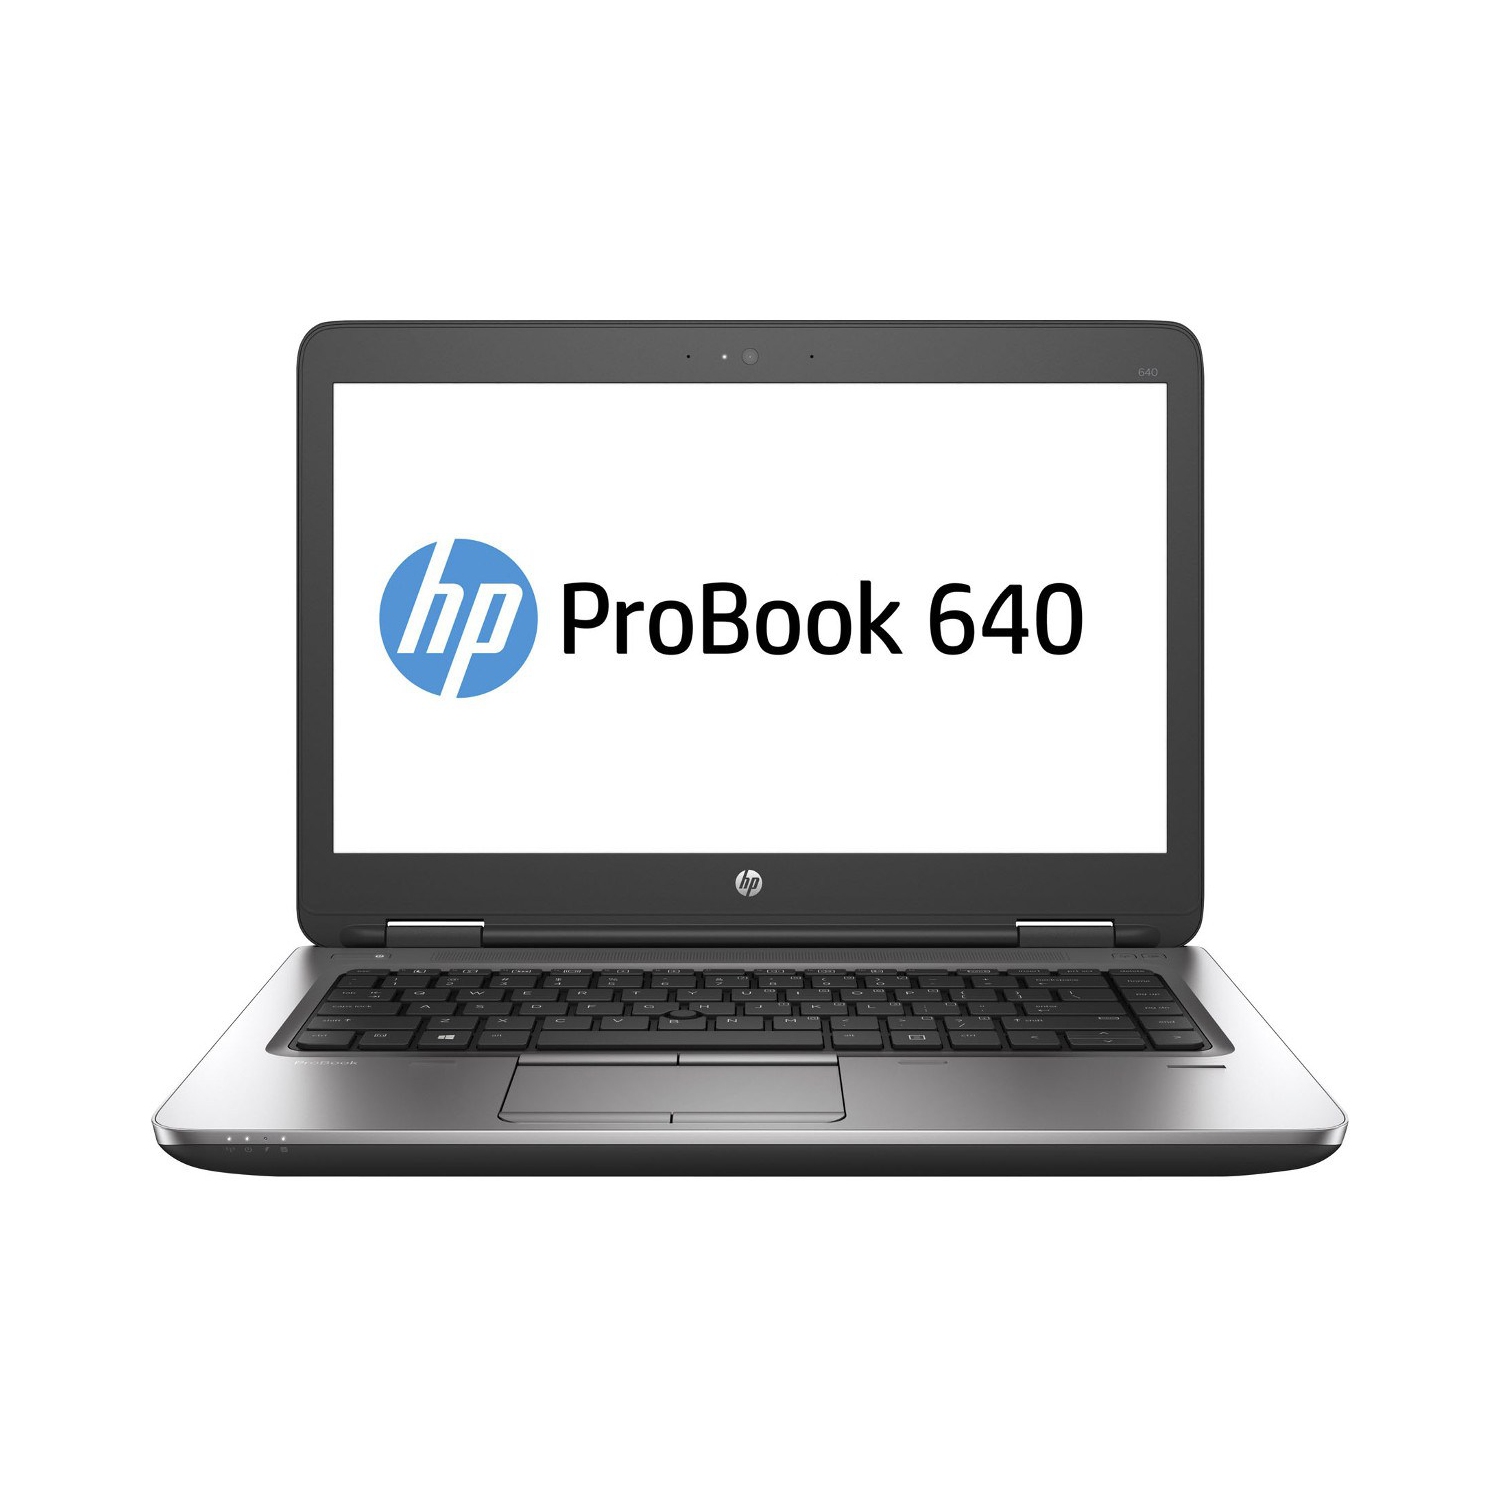 Refurbished (Excellent) - HP ProBook 640 G2 14" Laptop, Intel Core i7 6600U up to 3.4G, 8G DDR4, 500G, VGA, DP, USB Type-C,W10P64 (EN/FR/ES)